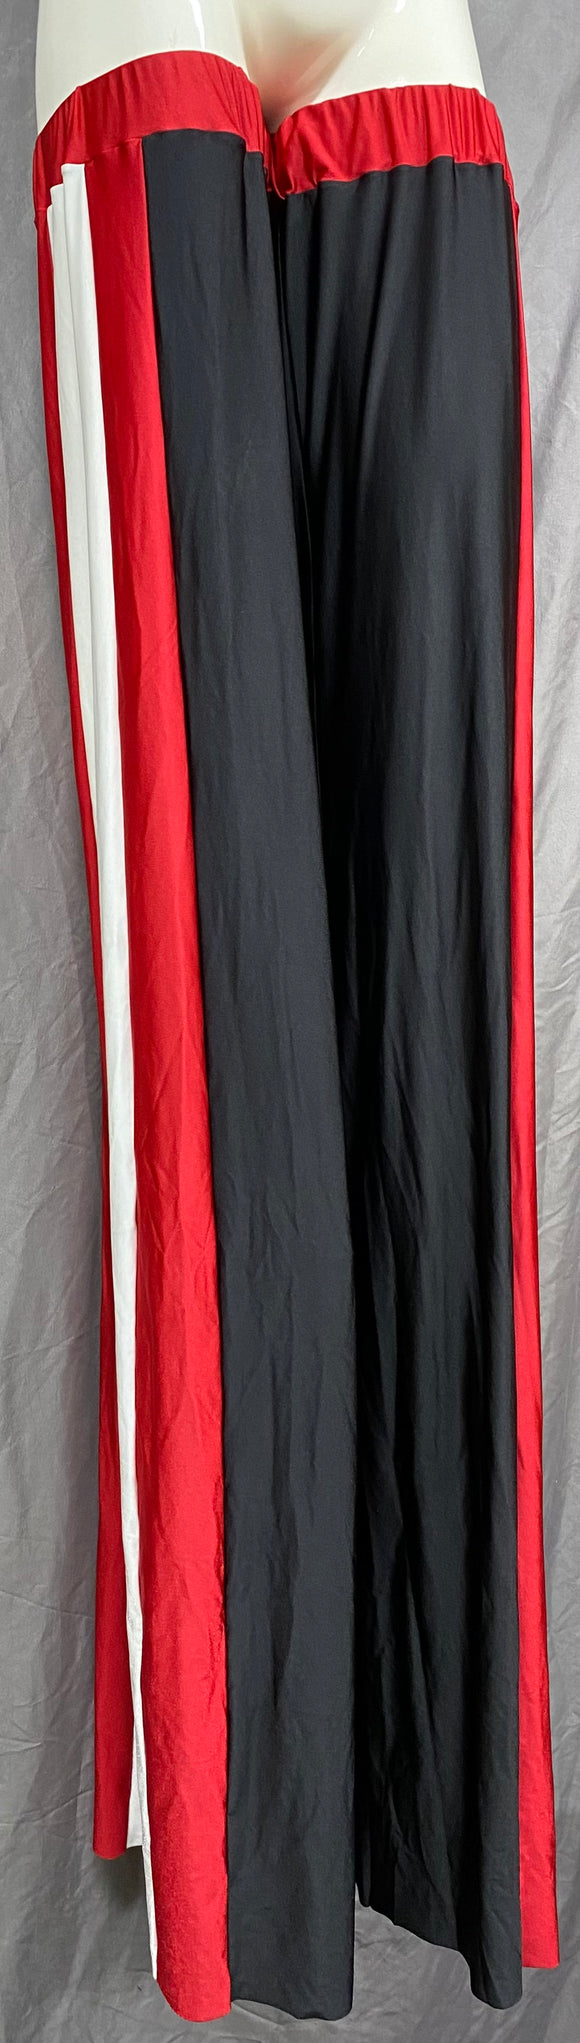 Stilt Covers - Black Red White 58